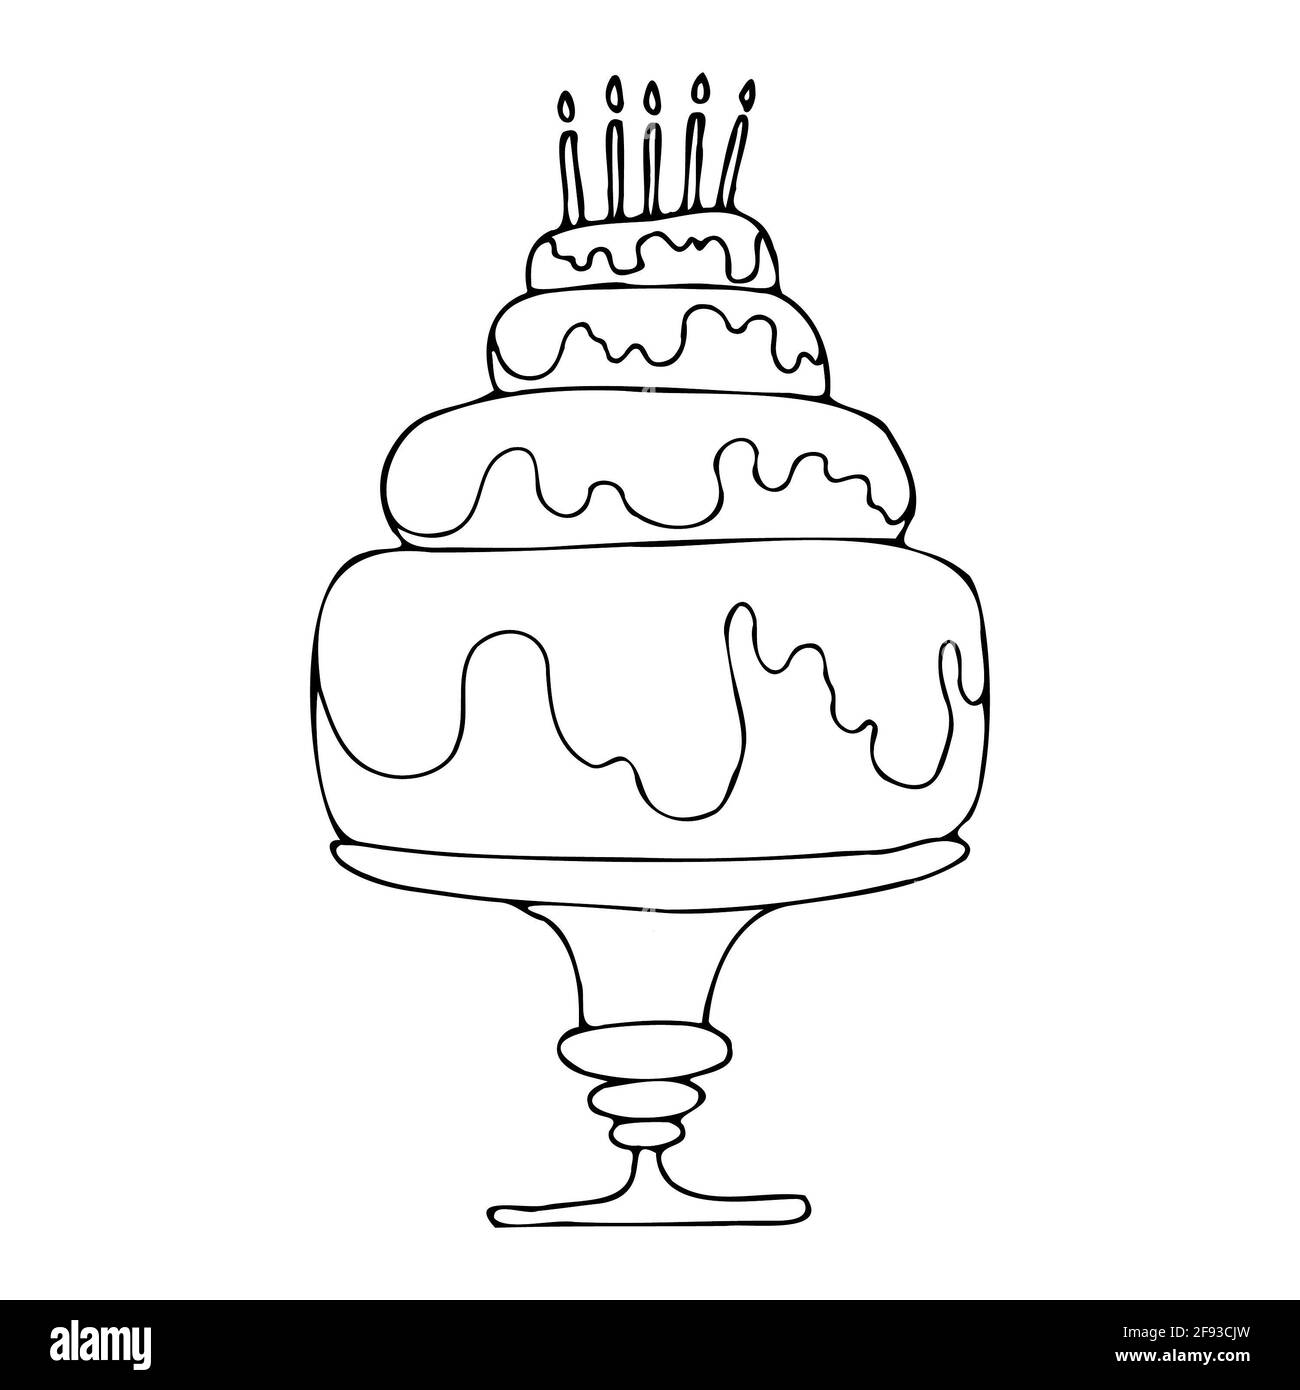 torta di compleanno vettore isolato con decorazione crema Foto Stock